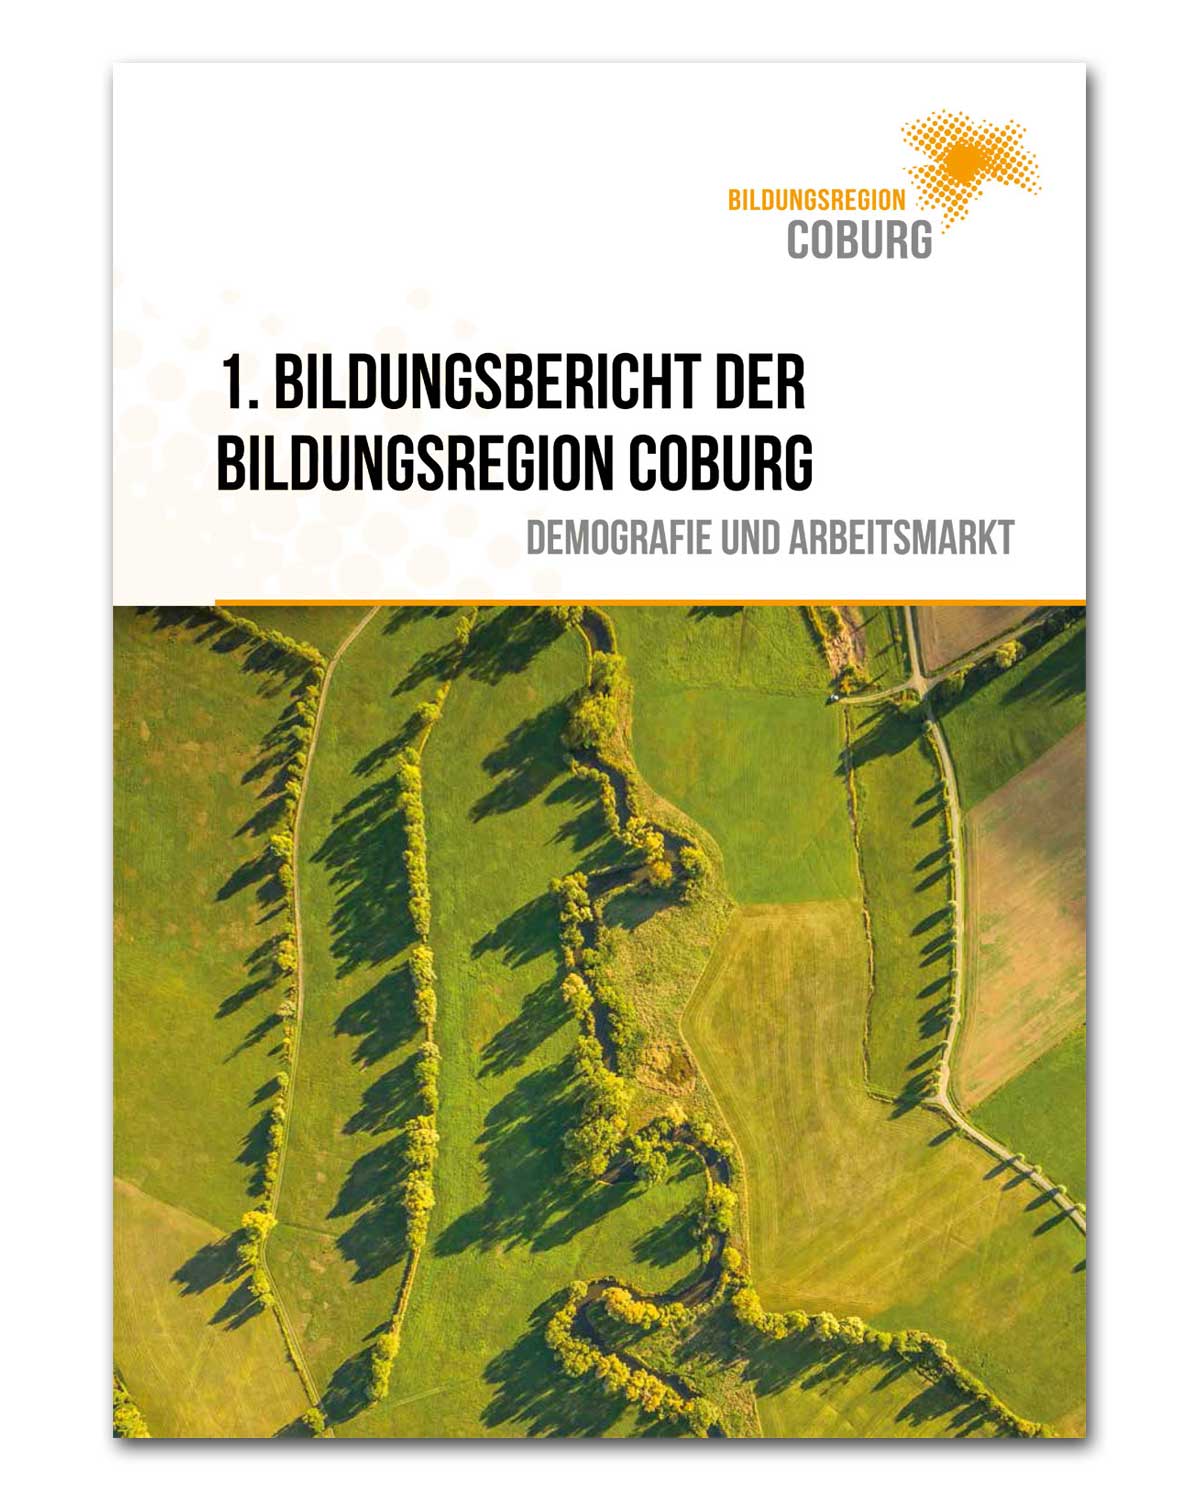 1. Bildungsbericht der Bildungsregion Coburg mit dem Untertitel "Demografie und Arbeitsmarkt". Das Deckblatt zeigt eine Landschaft mit Bäumen und grünen Wiesen, die aus der Vogelperpektive zu sehen sind.